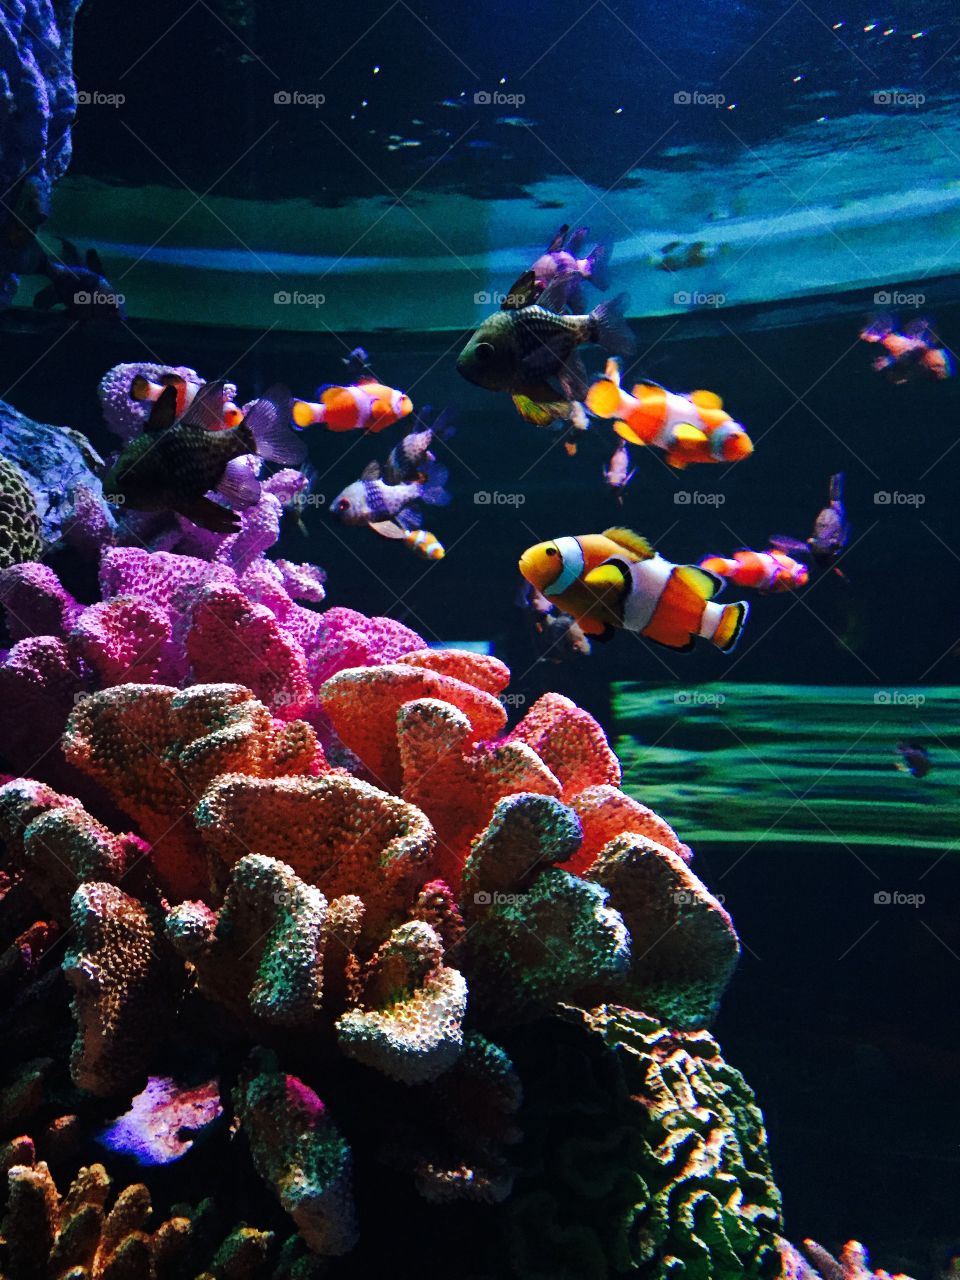 Fish in an aquarium. 